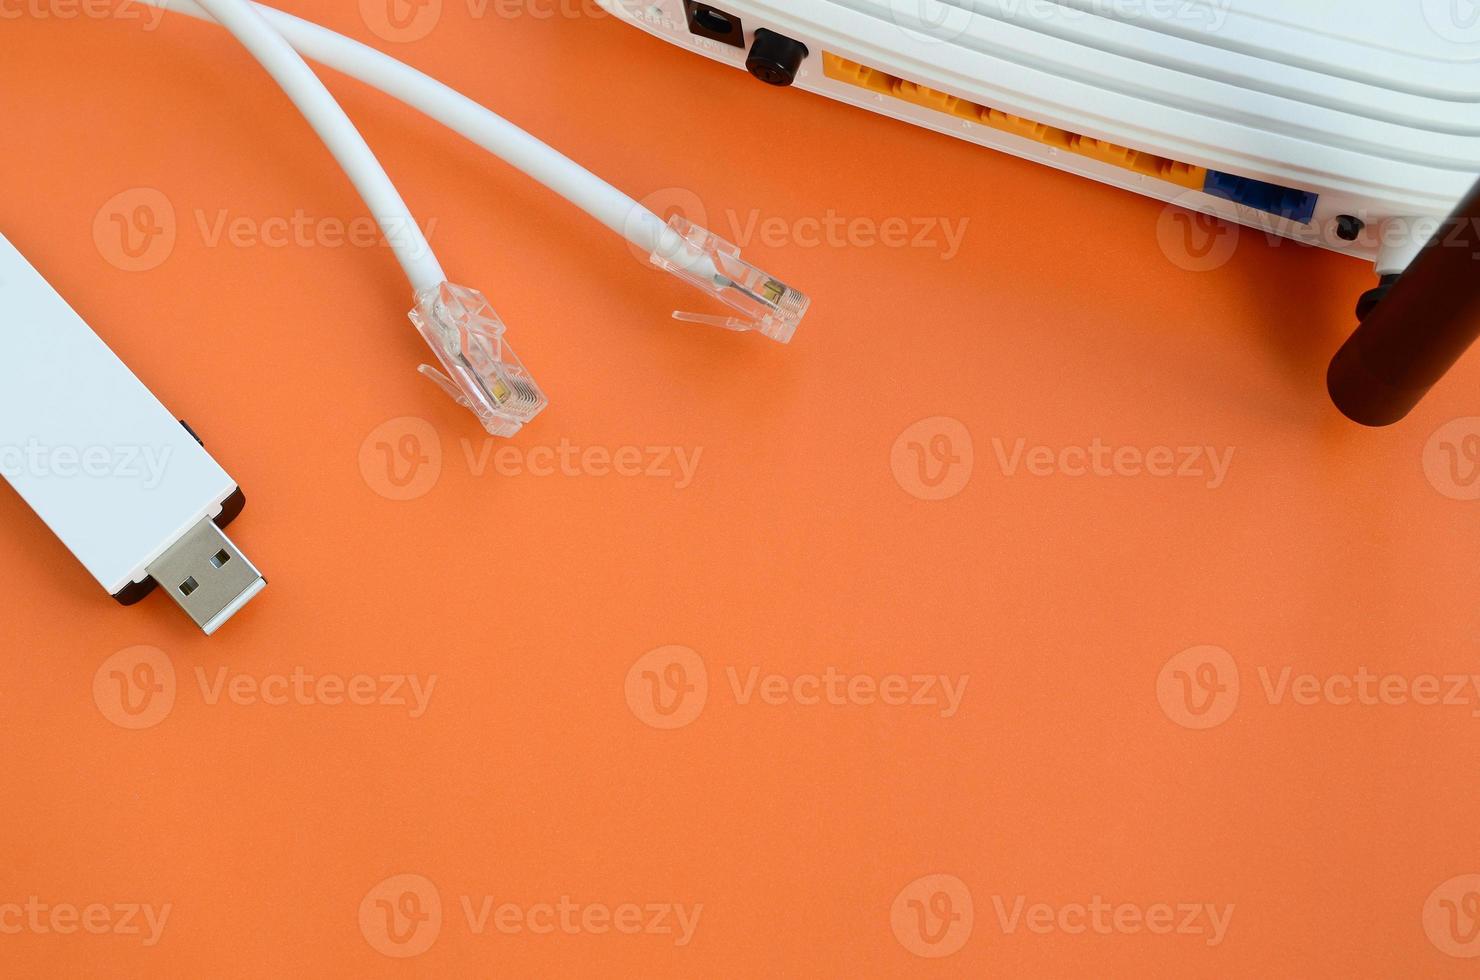 internet router, bärbar uSB Wi-Fi adapter och internet kabel- pluggar lögn på en ljus orange bakgrund. objekt nödvändig för internet förbindelse foto